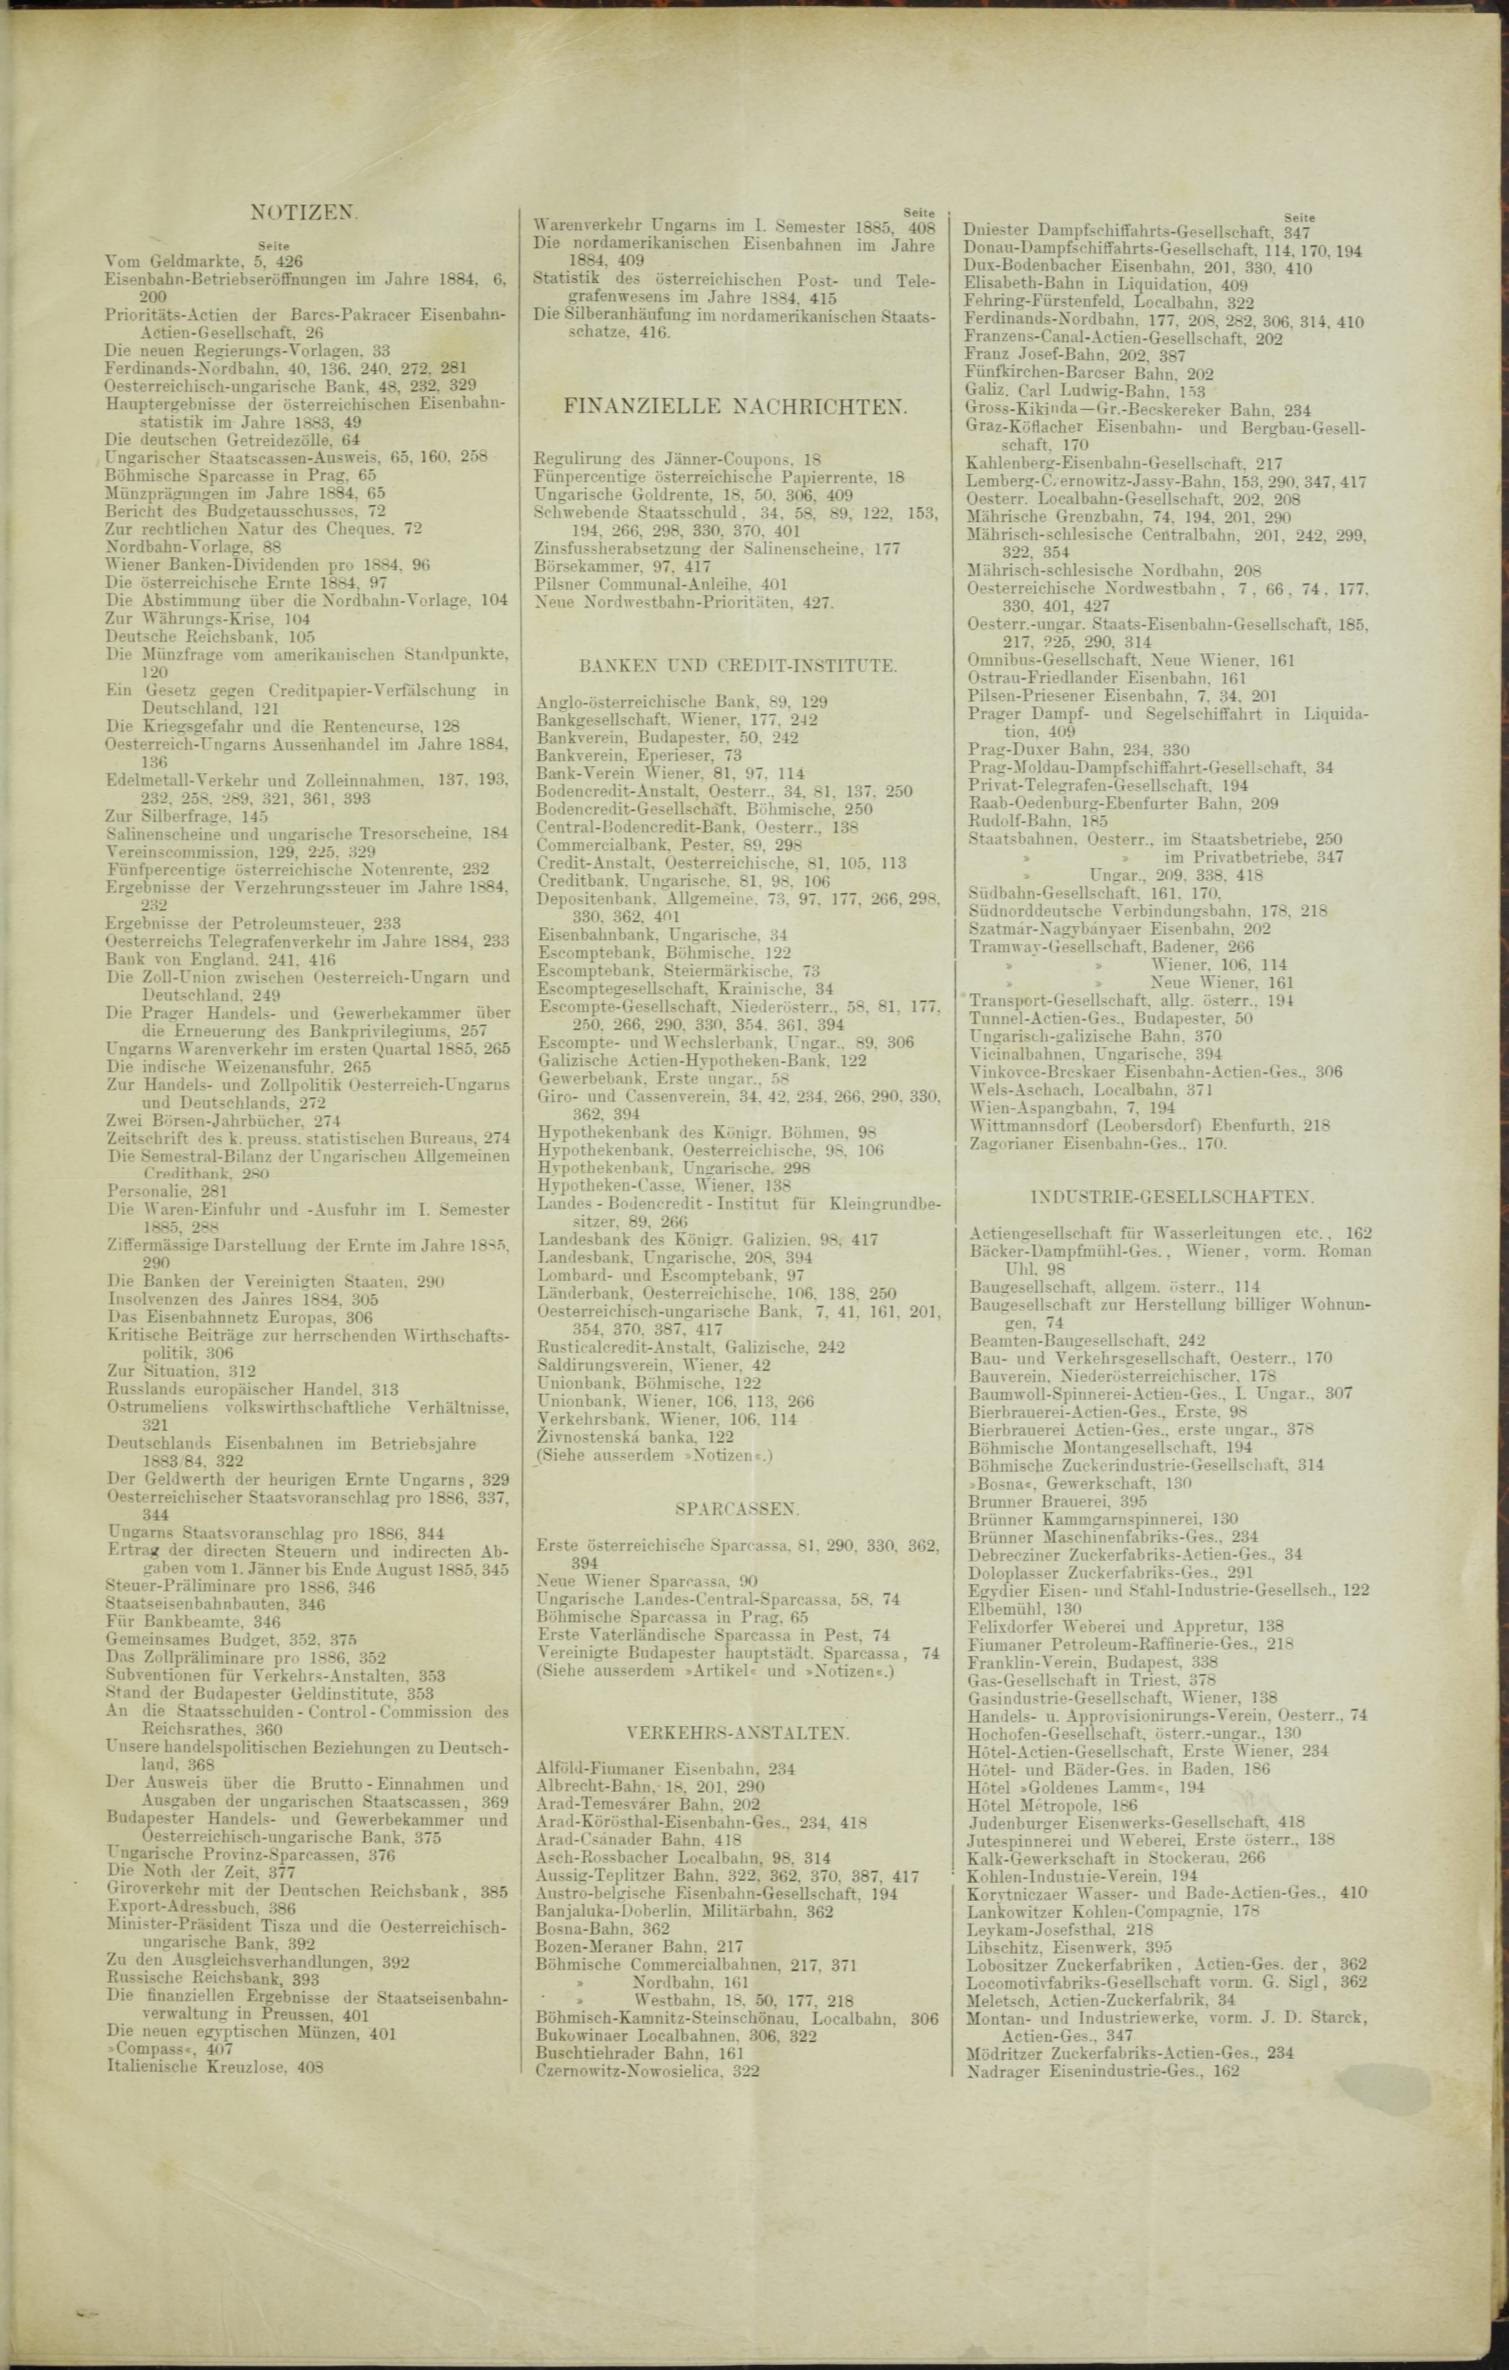 Der Tresor 23.04.1885 - Seite 11